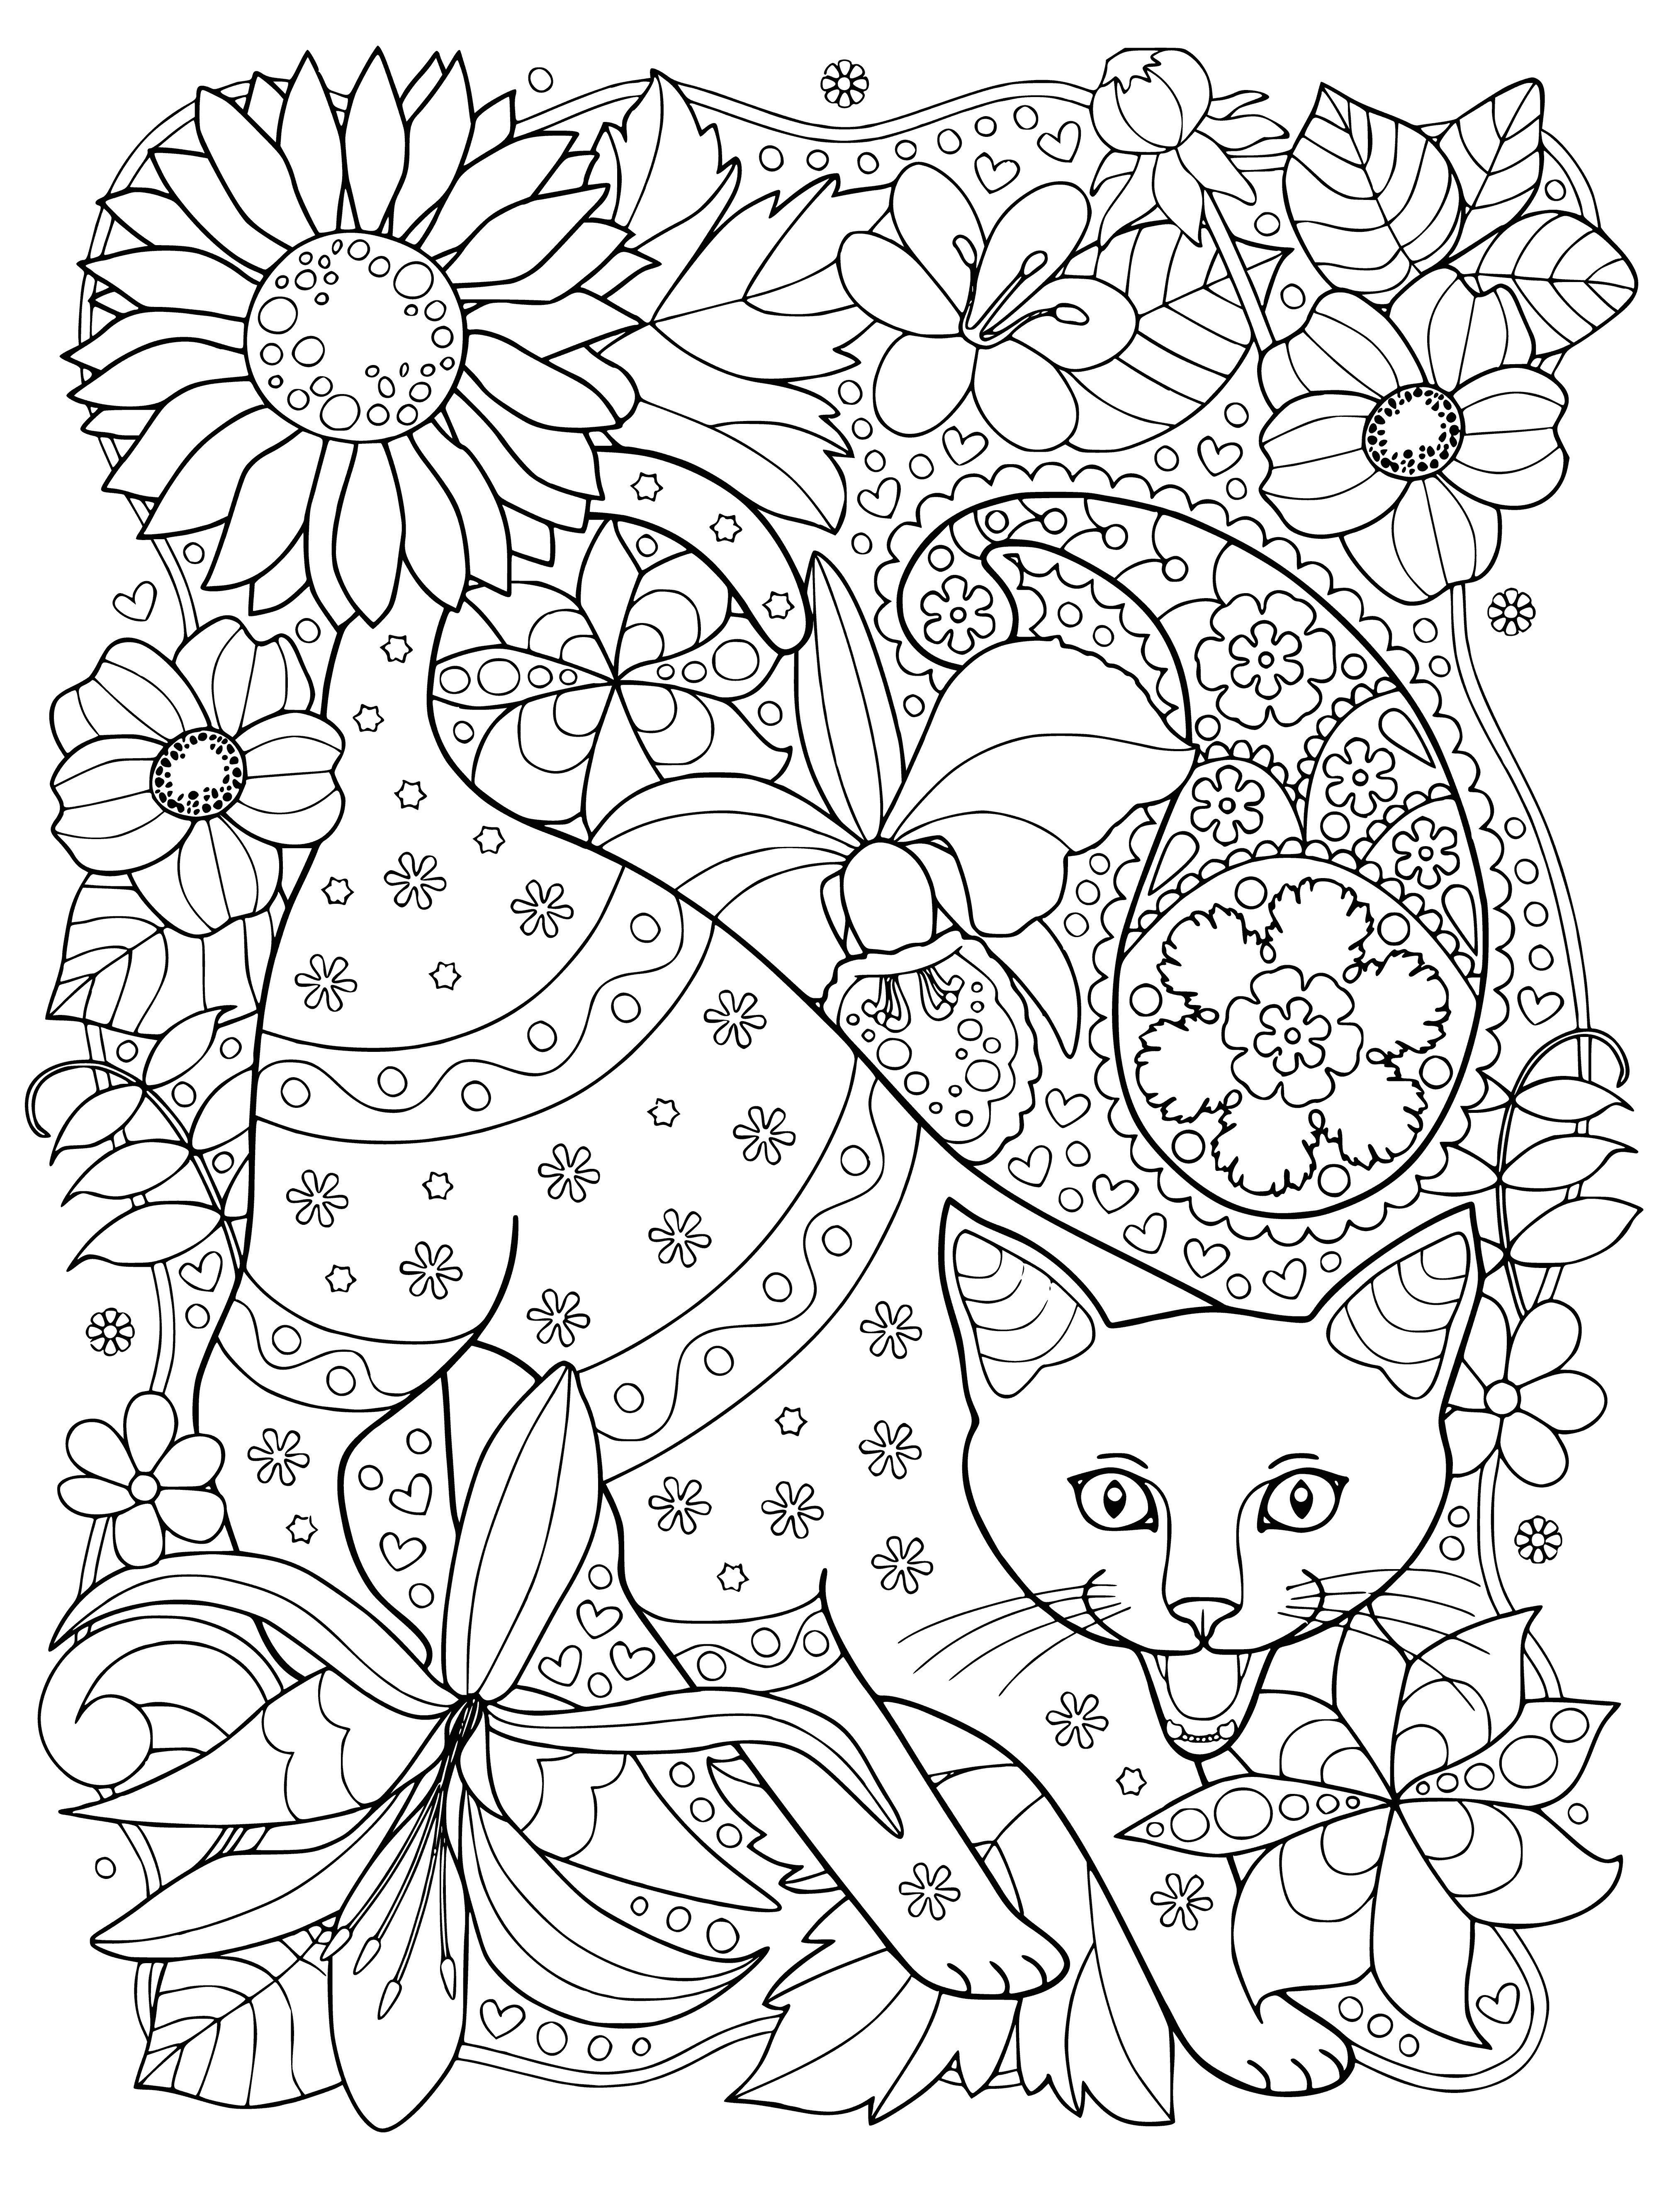 Il gatto miagola pagina da colorare